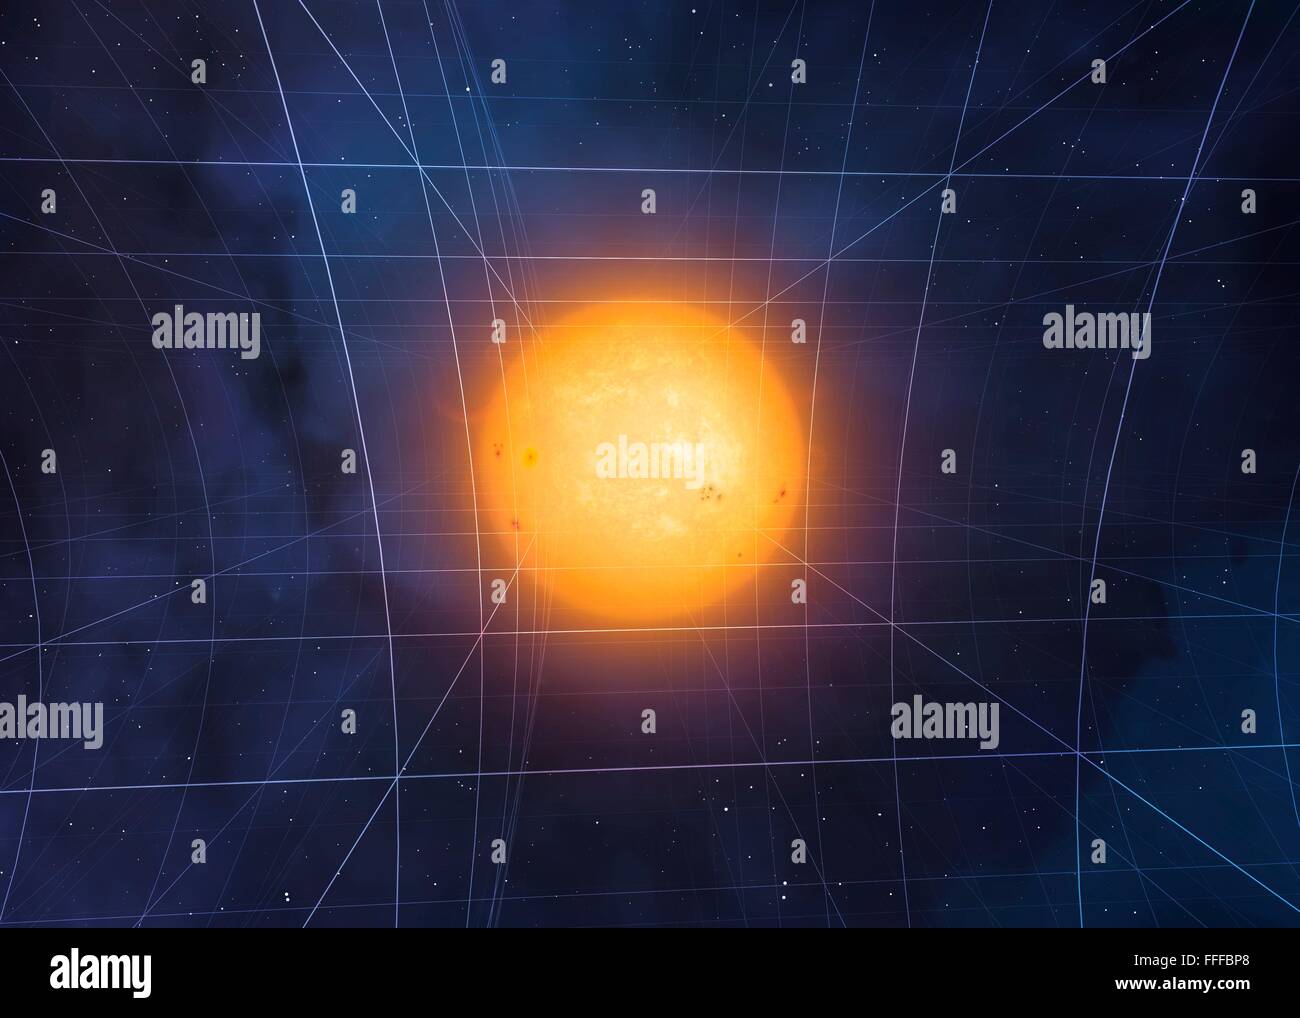 La curvatura dello spazio-tempo. Computer artwork del sole della curvatura dello spazio-tempo secondo Einstein Teoria della relatività generale. Foto Stock